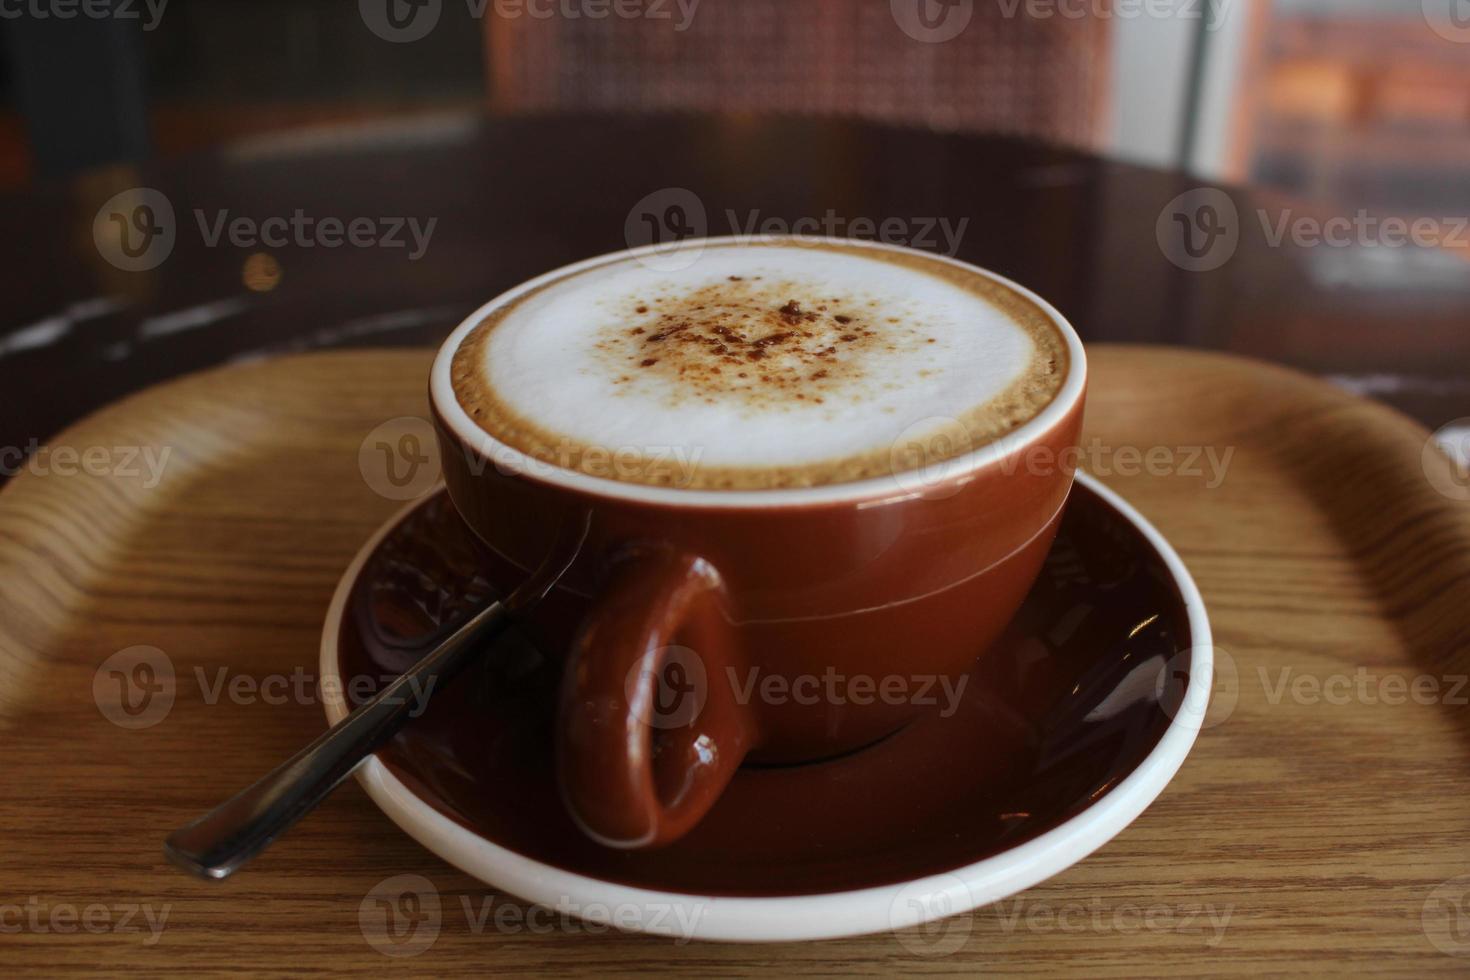 latte kaffe i en vackert formad kopp med rörelseoskärpa foto